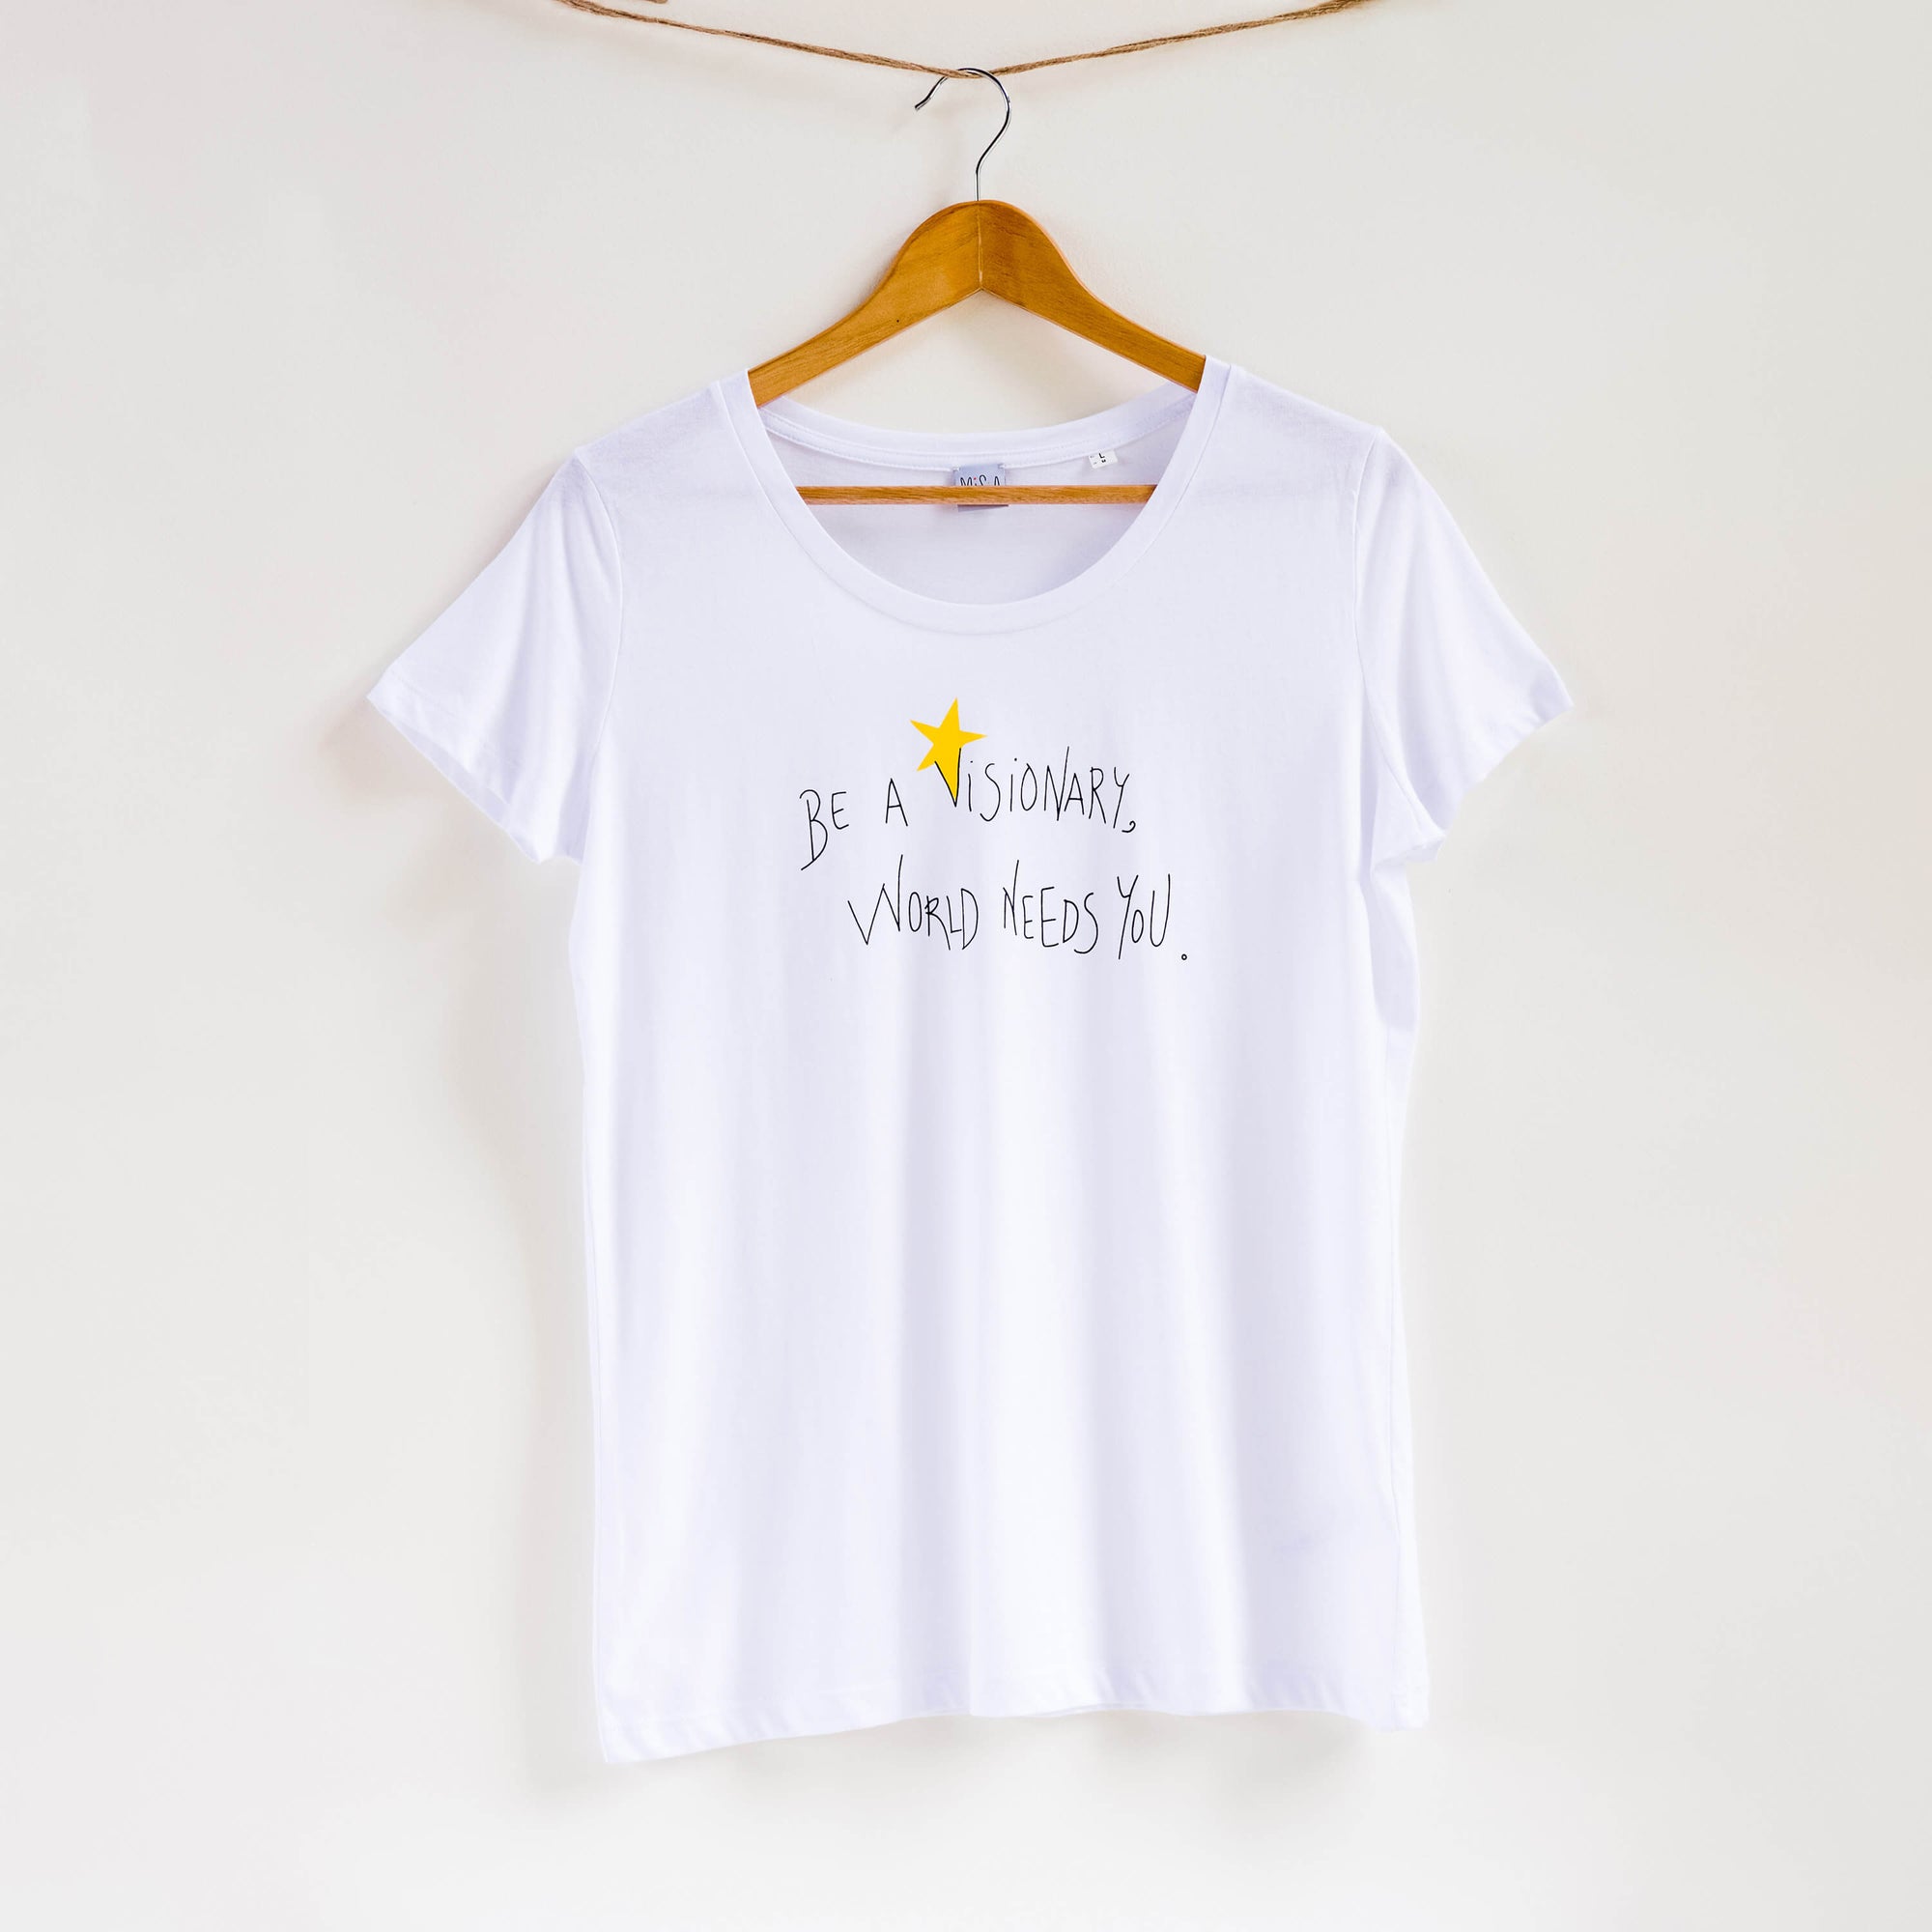 Camiseta blanca de mujer, de algodón orgánico y estampado a mano con tintas ecológicas. Serigrafía en color negro y amarillo. 